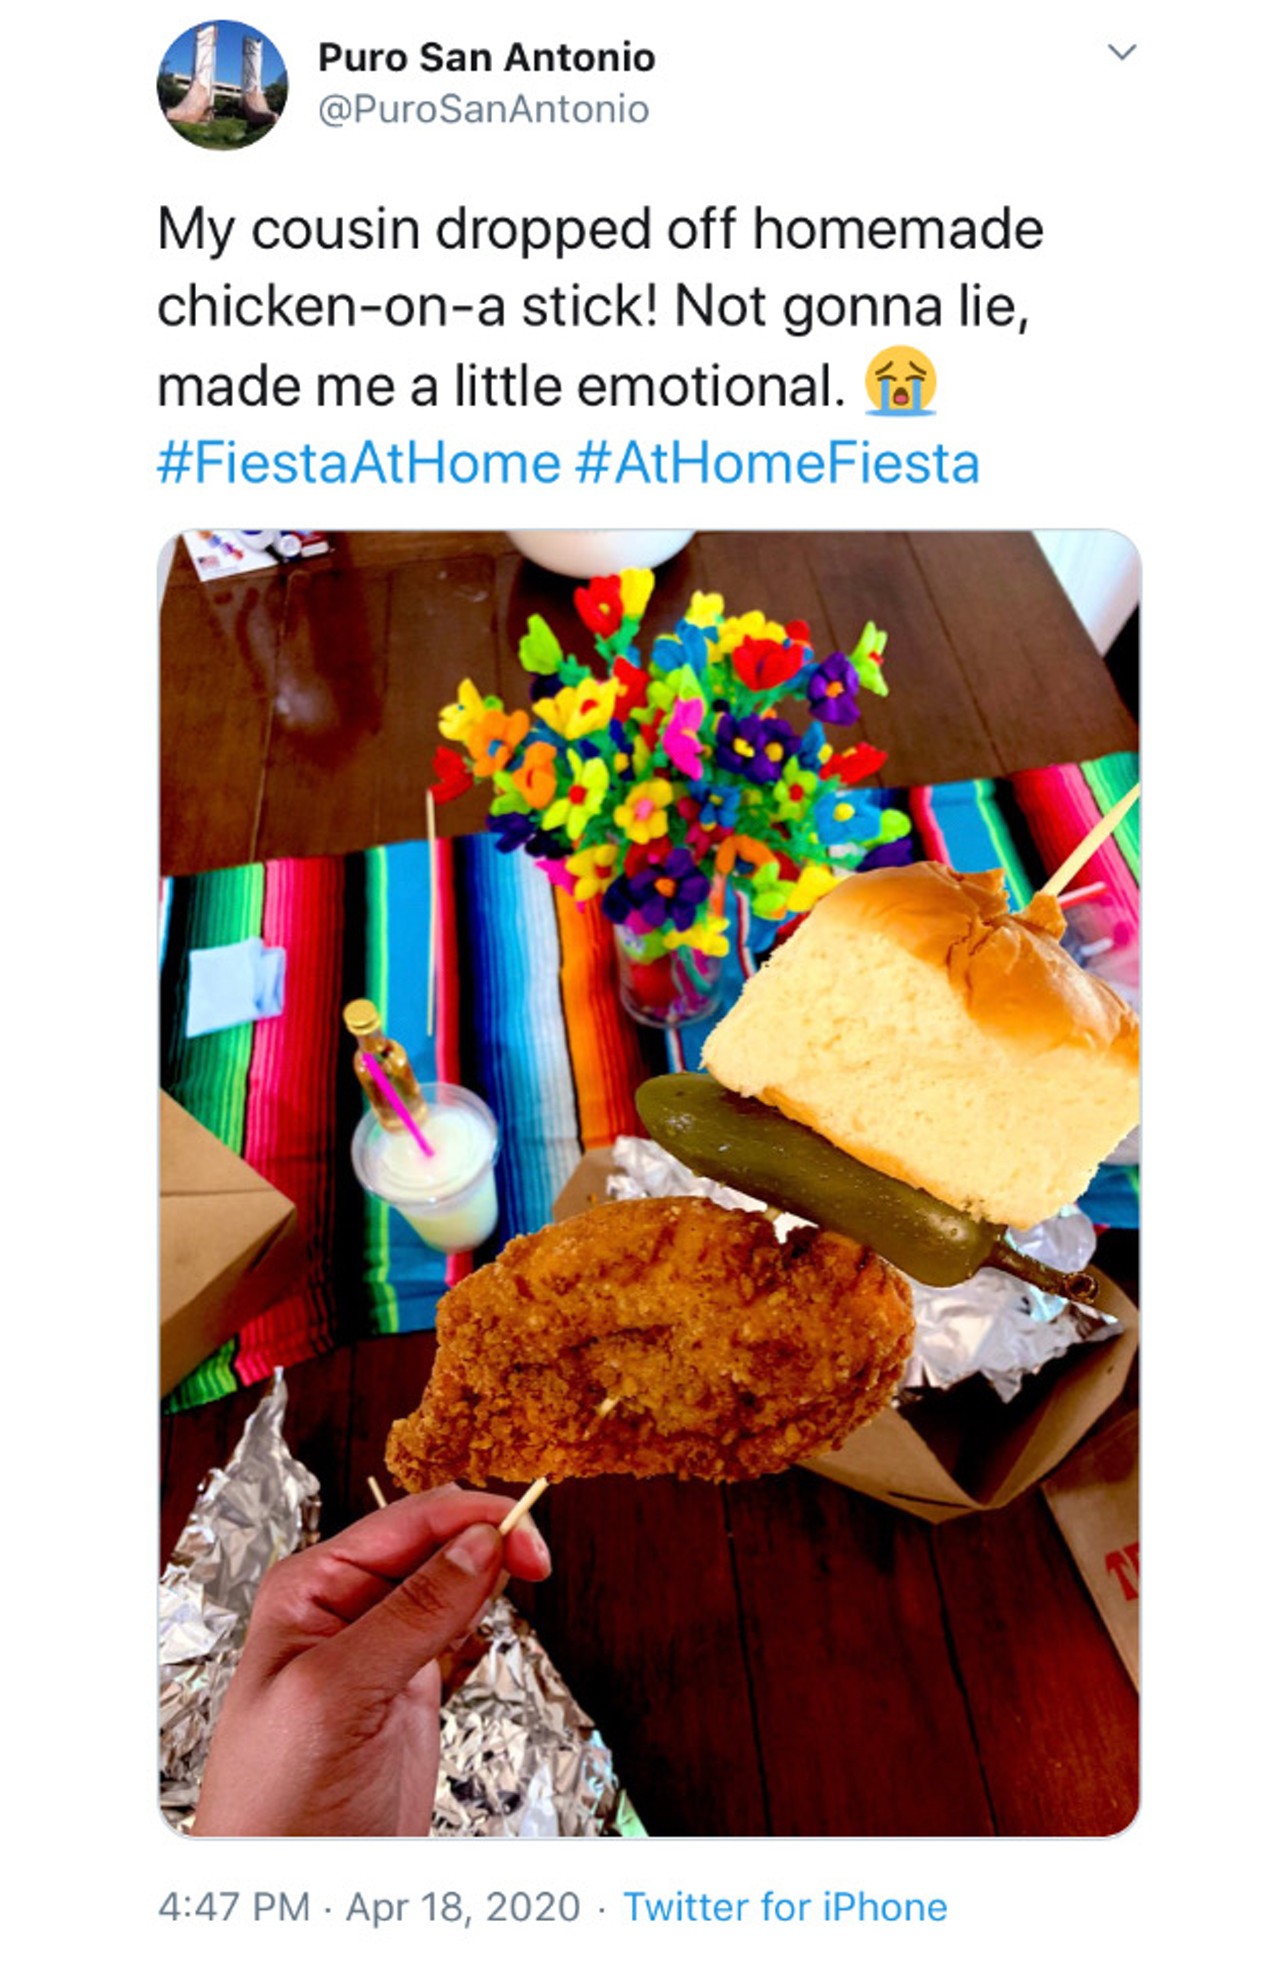 San Antonio's Most Relatable Tweets About Fiesta Being Postponed